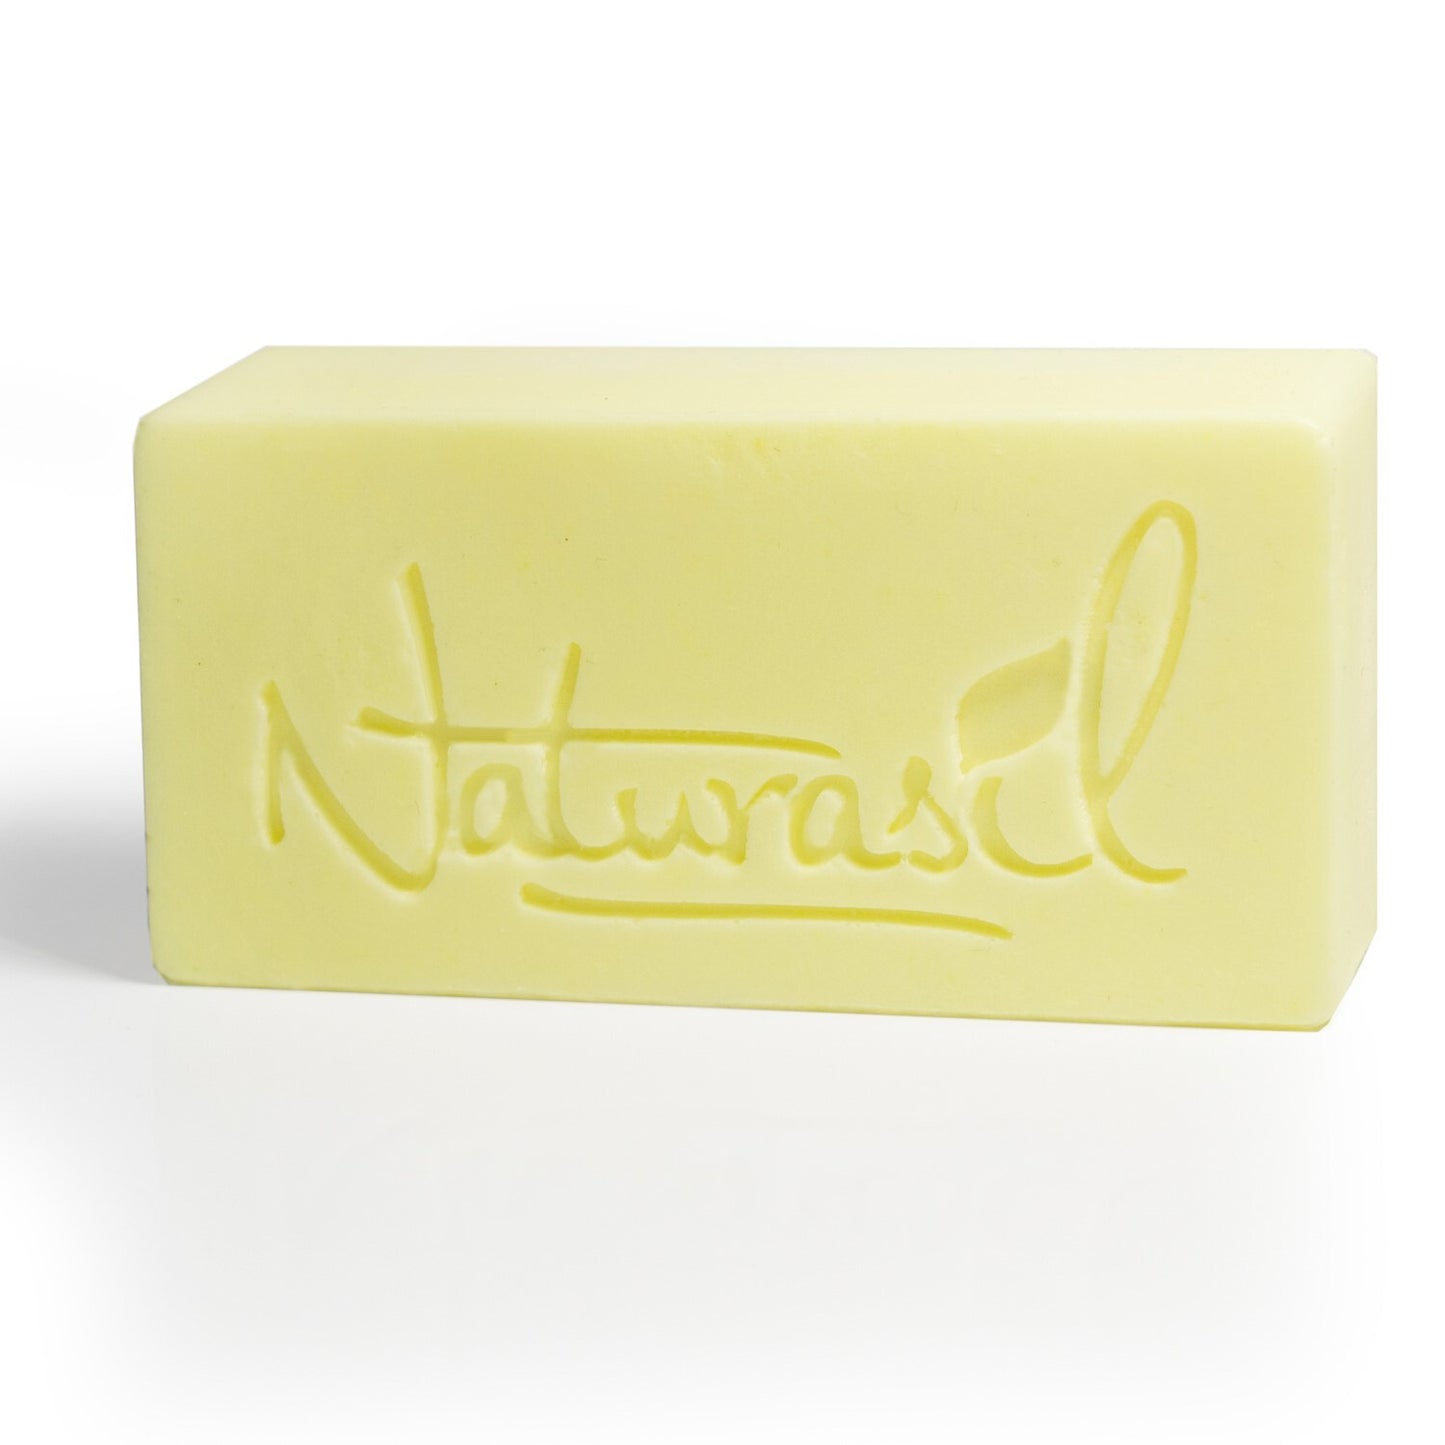 Premium Sulfur Lavender Soap | 10% Sulfur Advanced Cleansing Bar 4oz (12 - Pack) - Naturasil